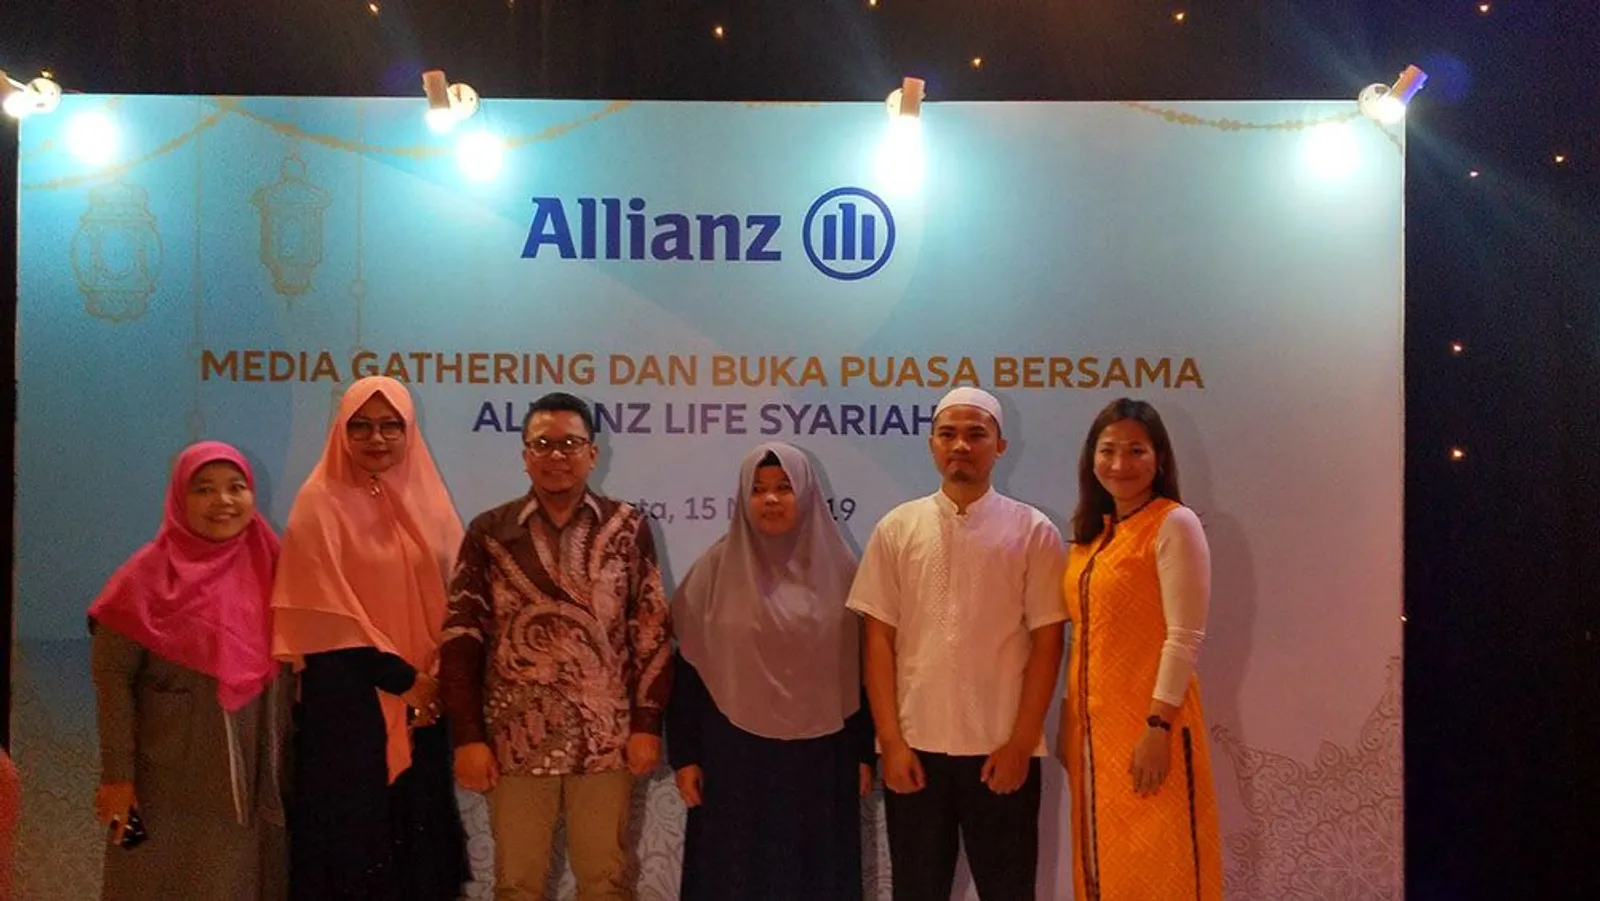 Allianz Life Syariah Kembali Adakan Program Kado Umroh, Ini Caranya 